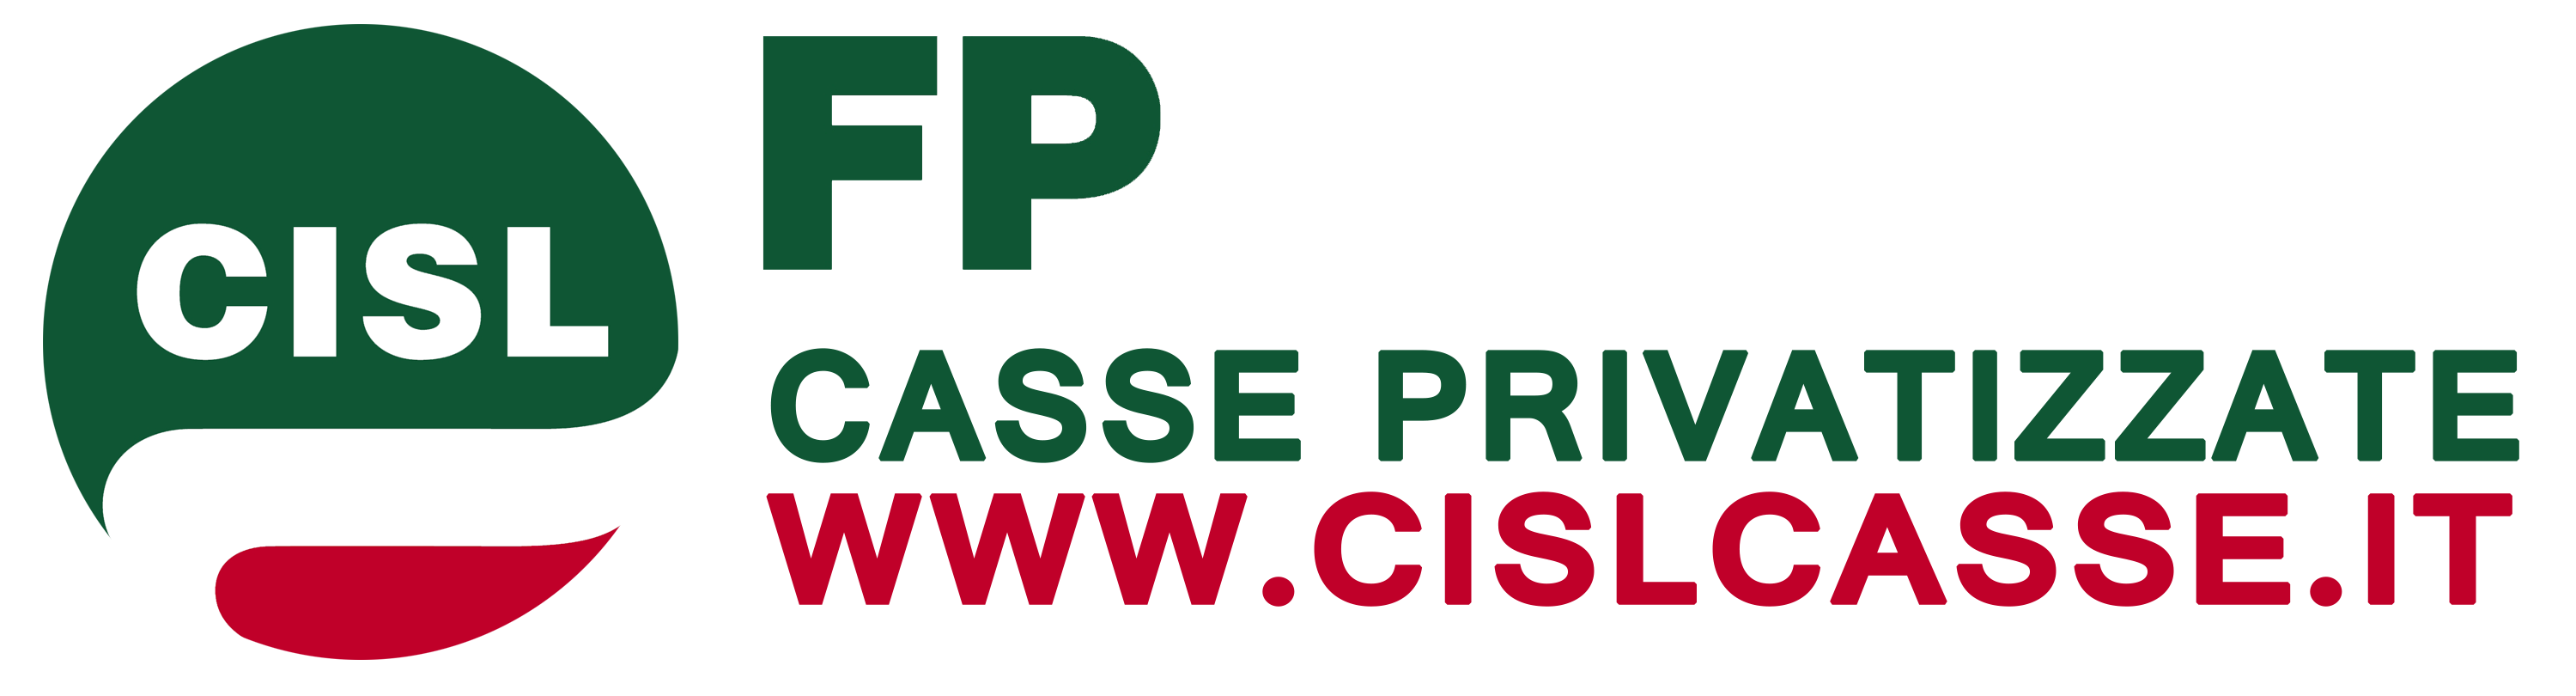 www.cislcasse.it